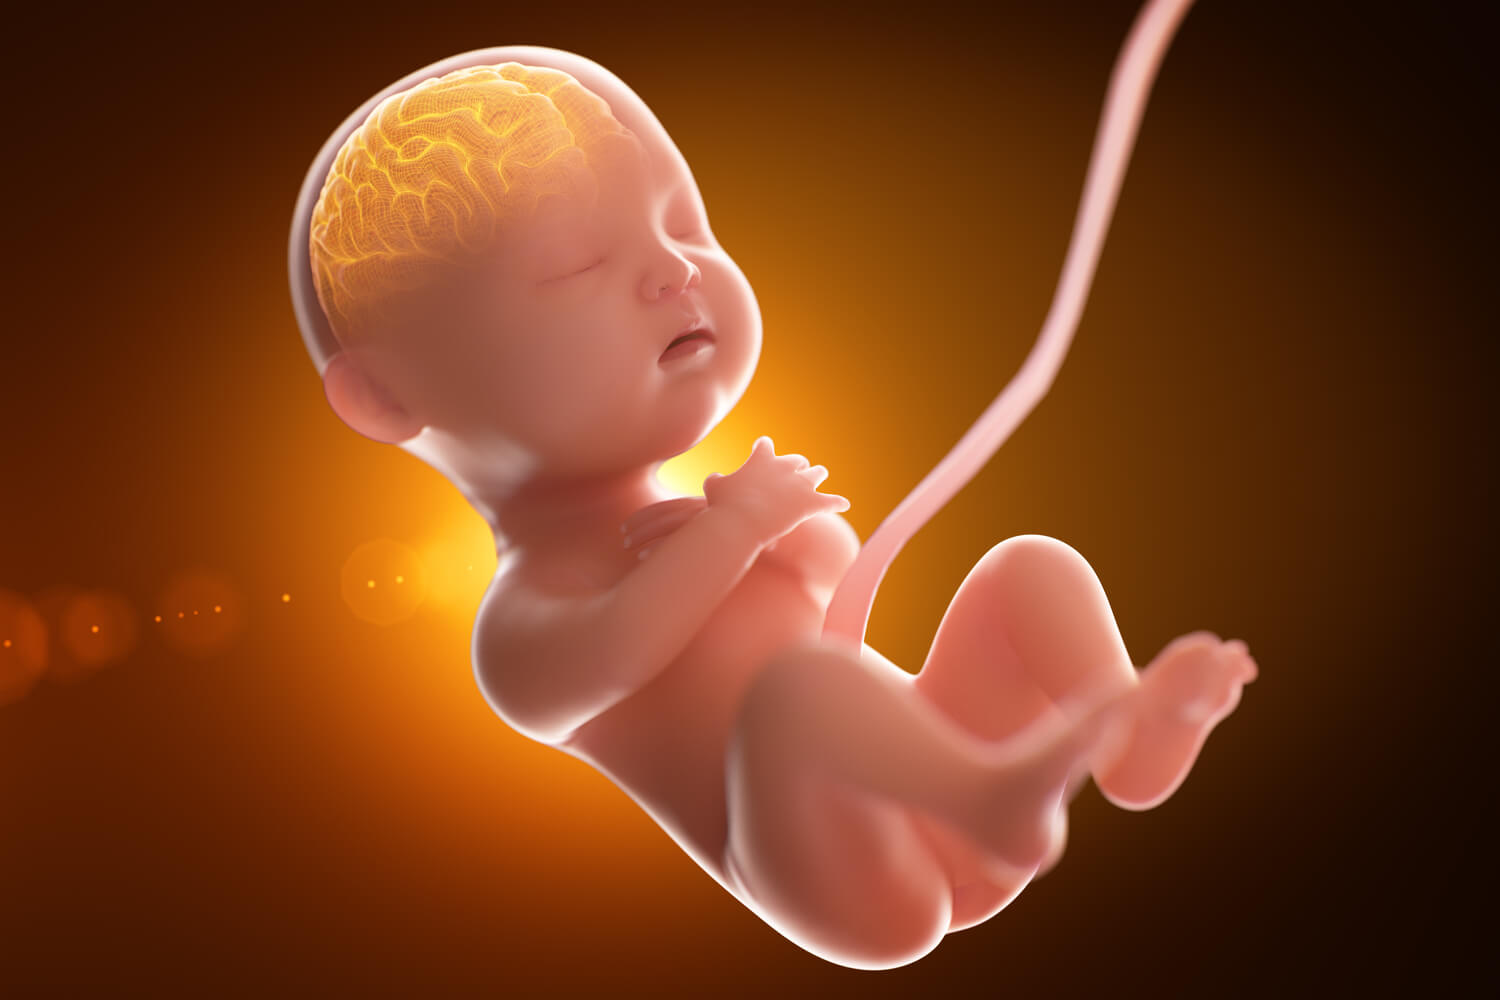 Fetal Development of Babys Brain